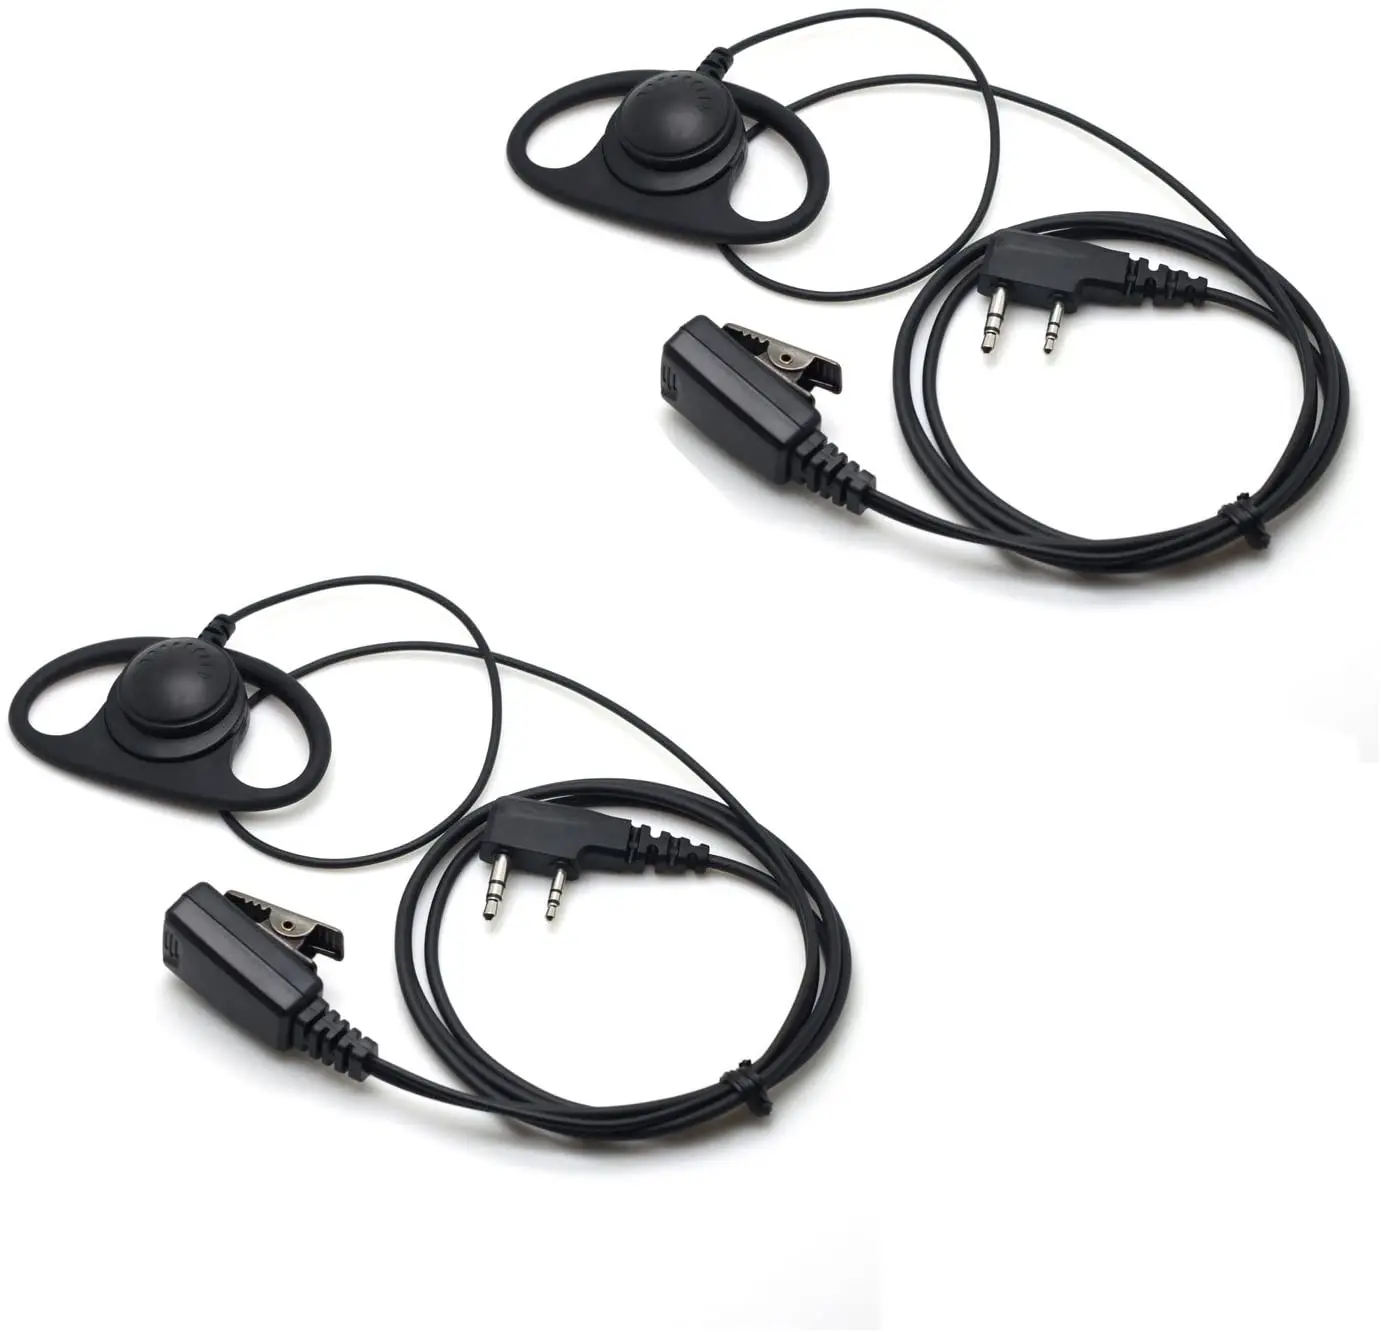 

D Shape Earpiece Headset for Kenwood, Baofeng, HYT 2 PIN Walkie Talkie Radio TK-250 LT-3288 PX-777 KG-689 Plus TG-UV2 (2 Packs)